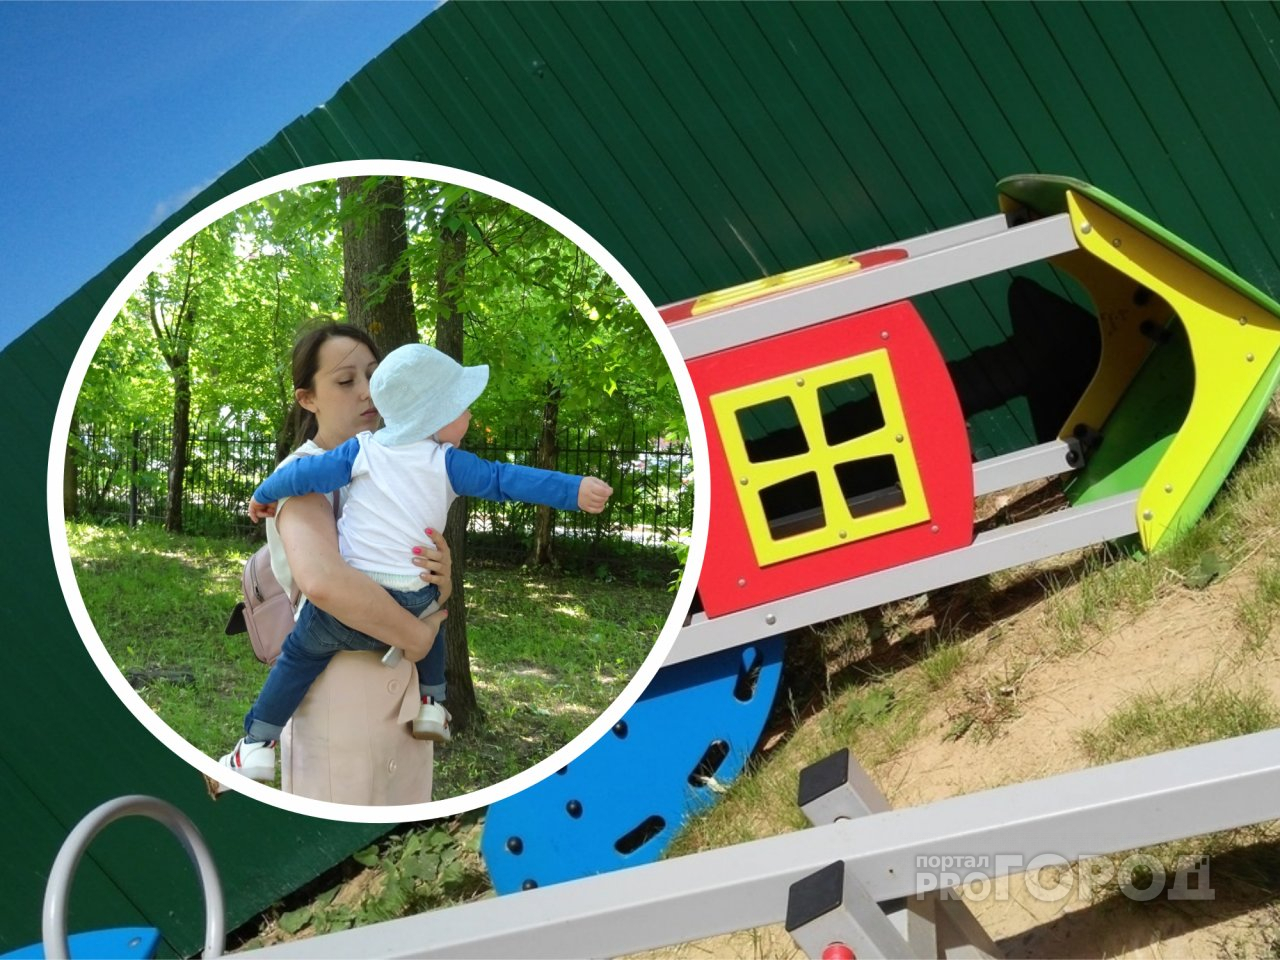 Железный домик на детской площадке опрокинулся вместе с матерью и ребенком